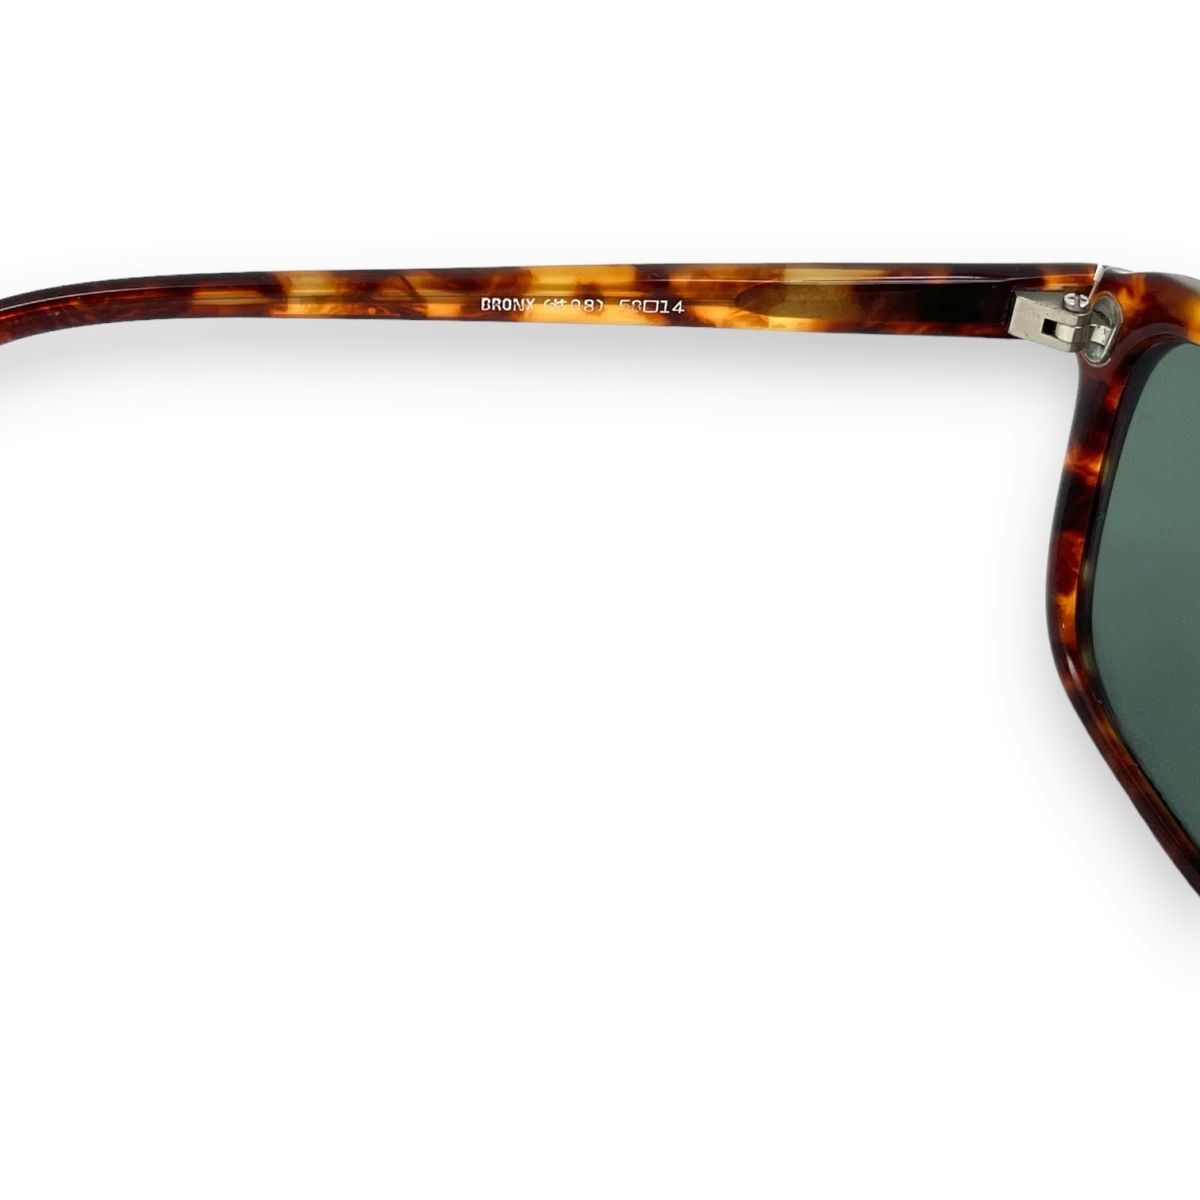 Ray-Ban RayBan солнцезащитные очки очки мелкие вещи I одежда мода бренд с футляром TRADITIONALS традиционный BRONX #08 панцирь черепахи 